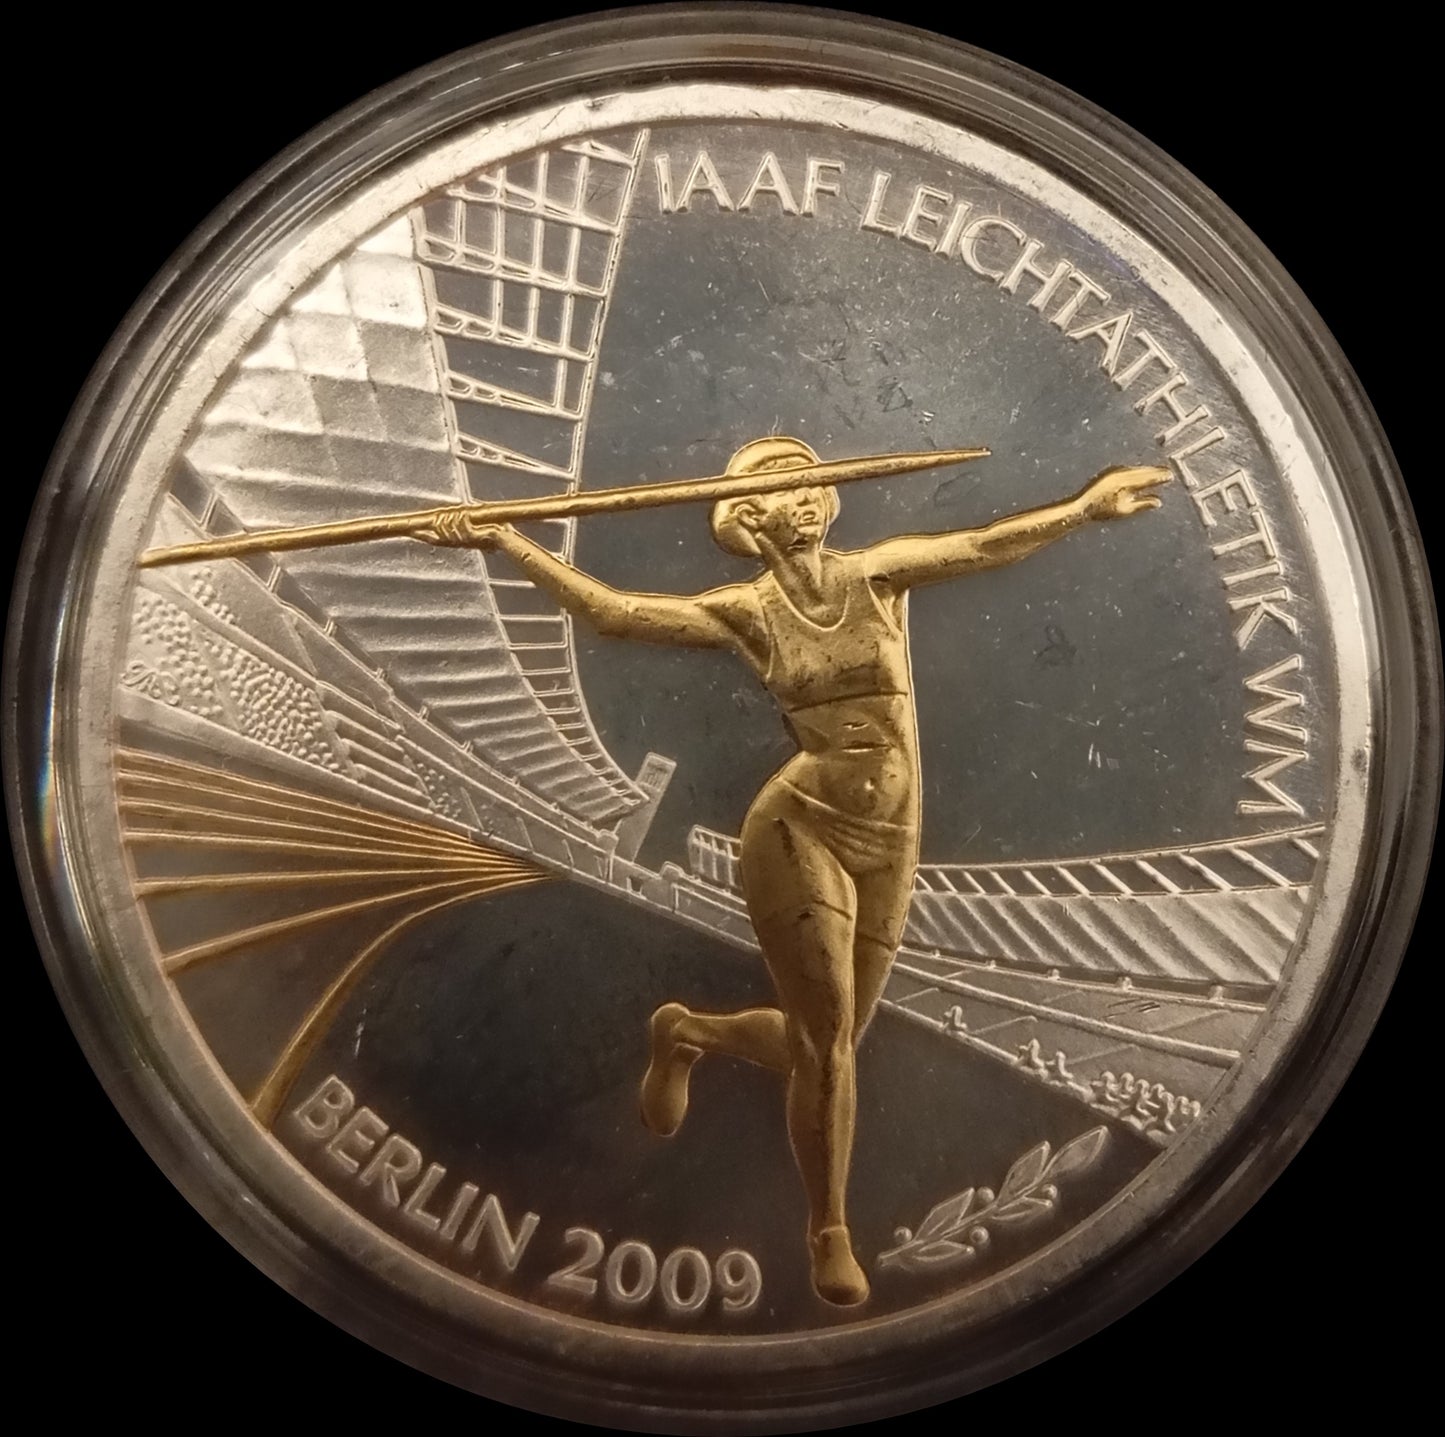 10 € Silber Gedenkmünzen vergoldet Deutschland, Stempelglanz, 2008-2011